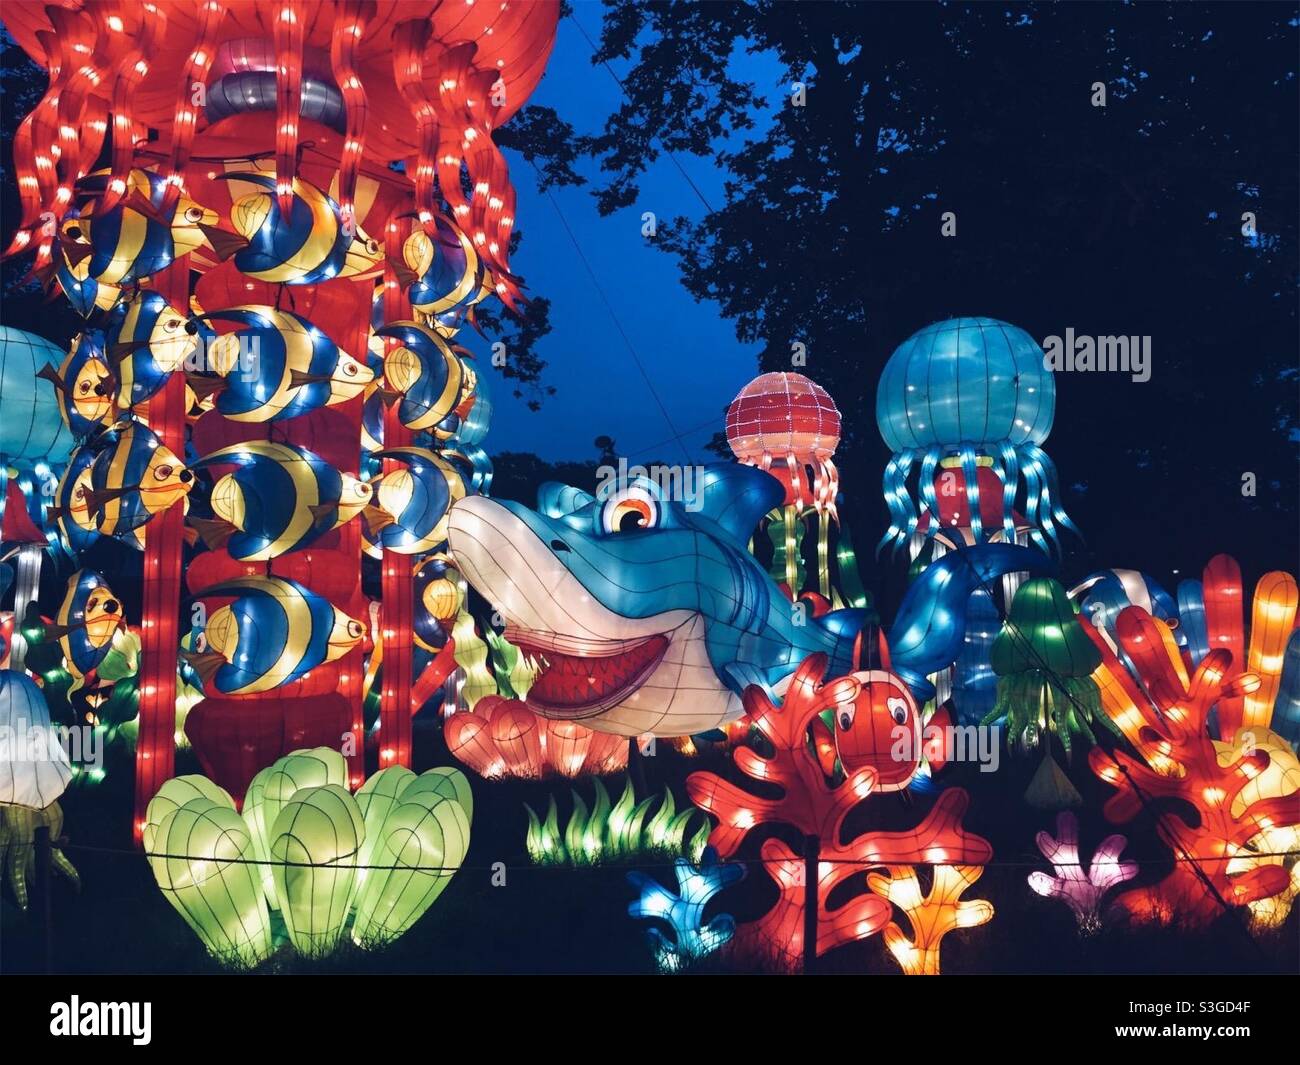 Festival des lanternes chinoises de Philadelphie Banque D'Images